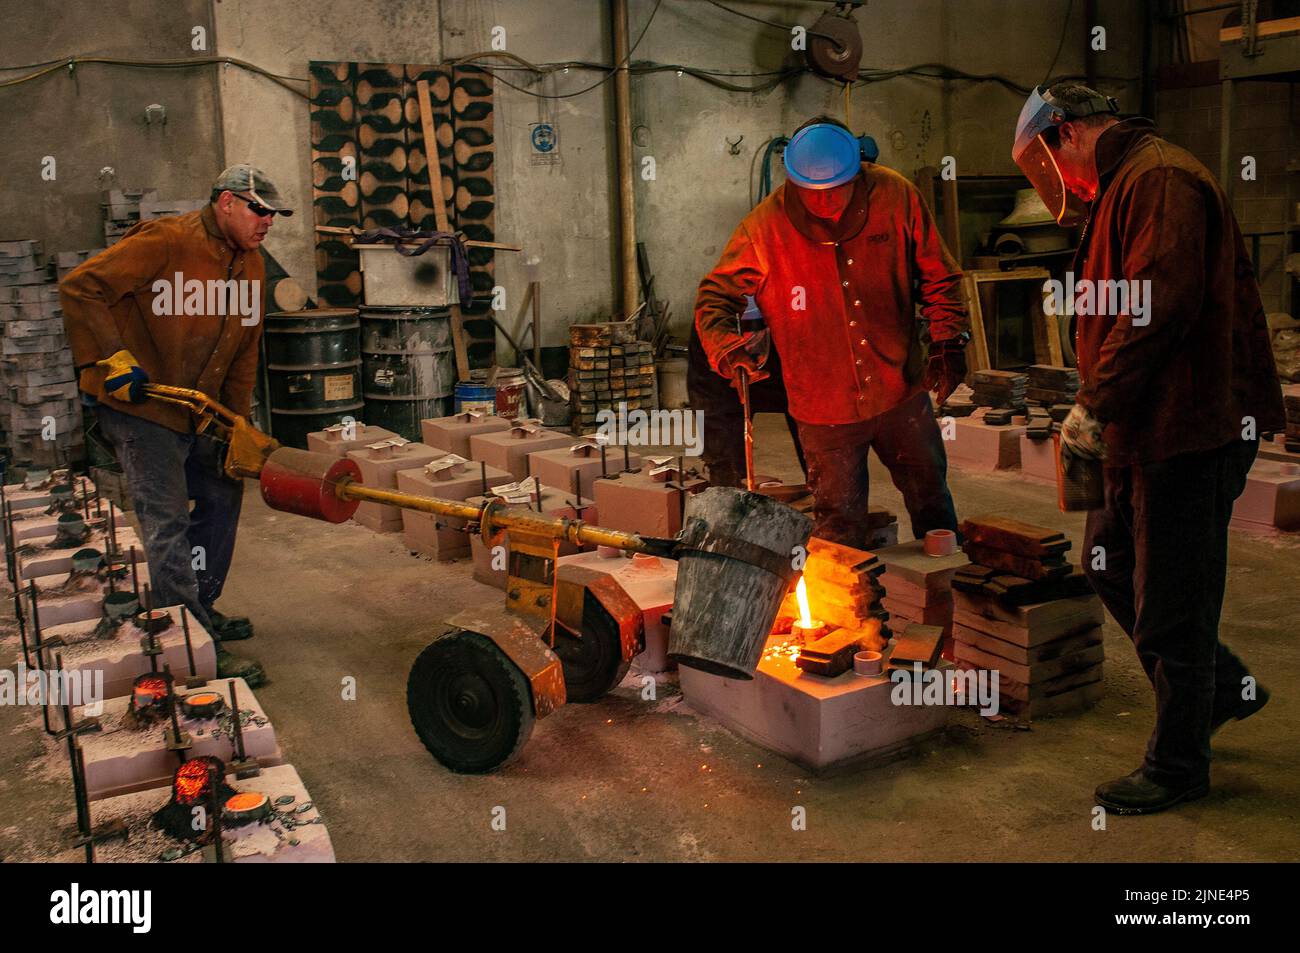 Les travailleurs de la fonderie jettent du métal fondu dans des moules dans une petite fonderie familiale à Perth, en Australie occidentale Banque D'Images